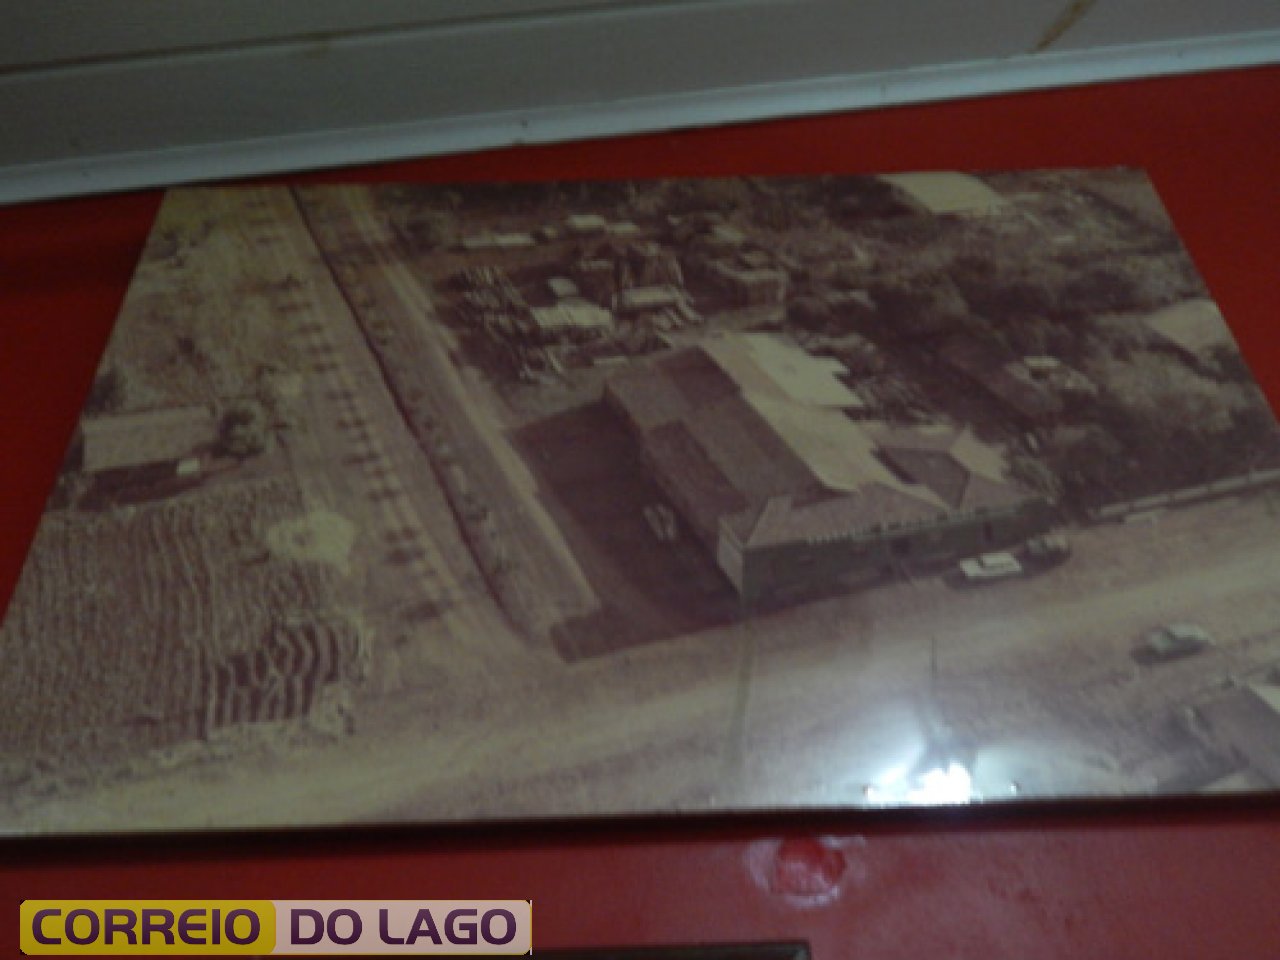 Visão panorâmica da marcenaria Kozerski a direita. A esquerda Av. Paraná, década de 1970 despovoada.